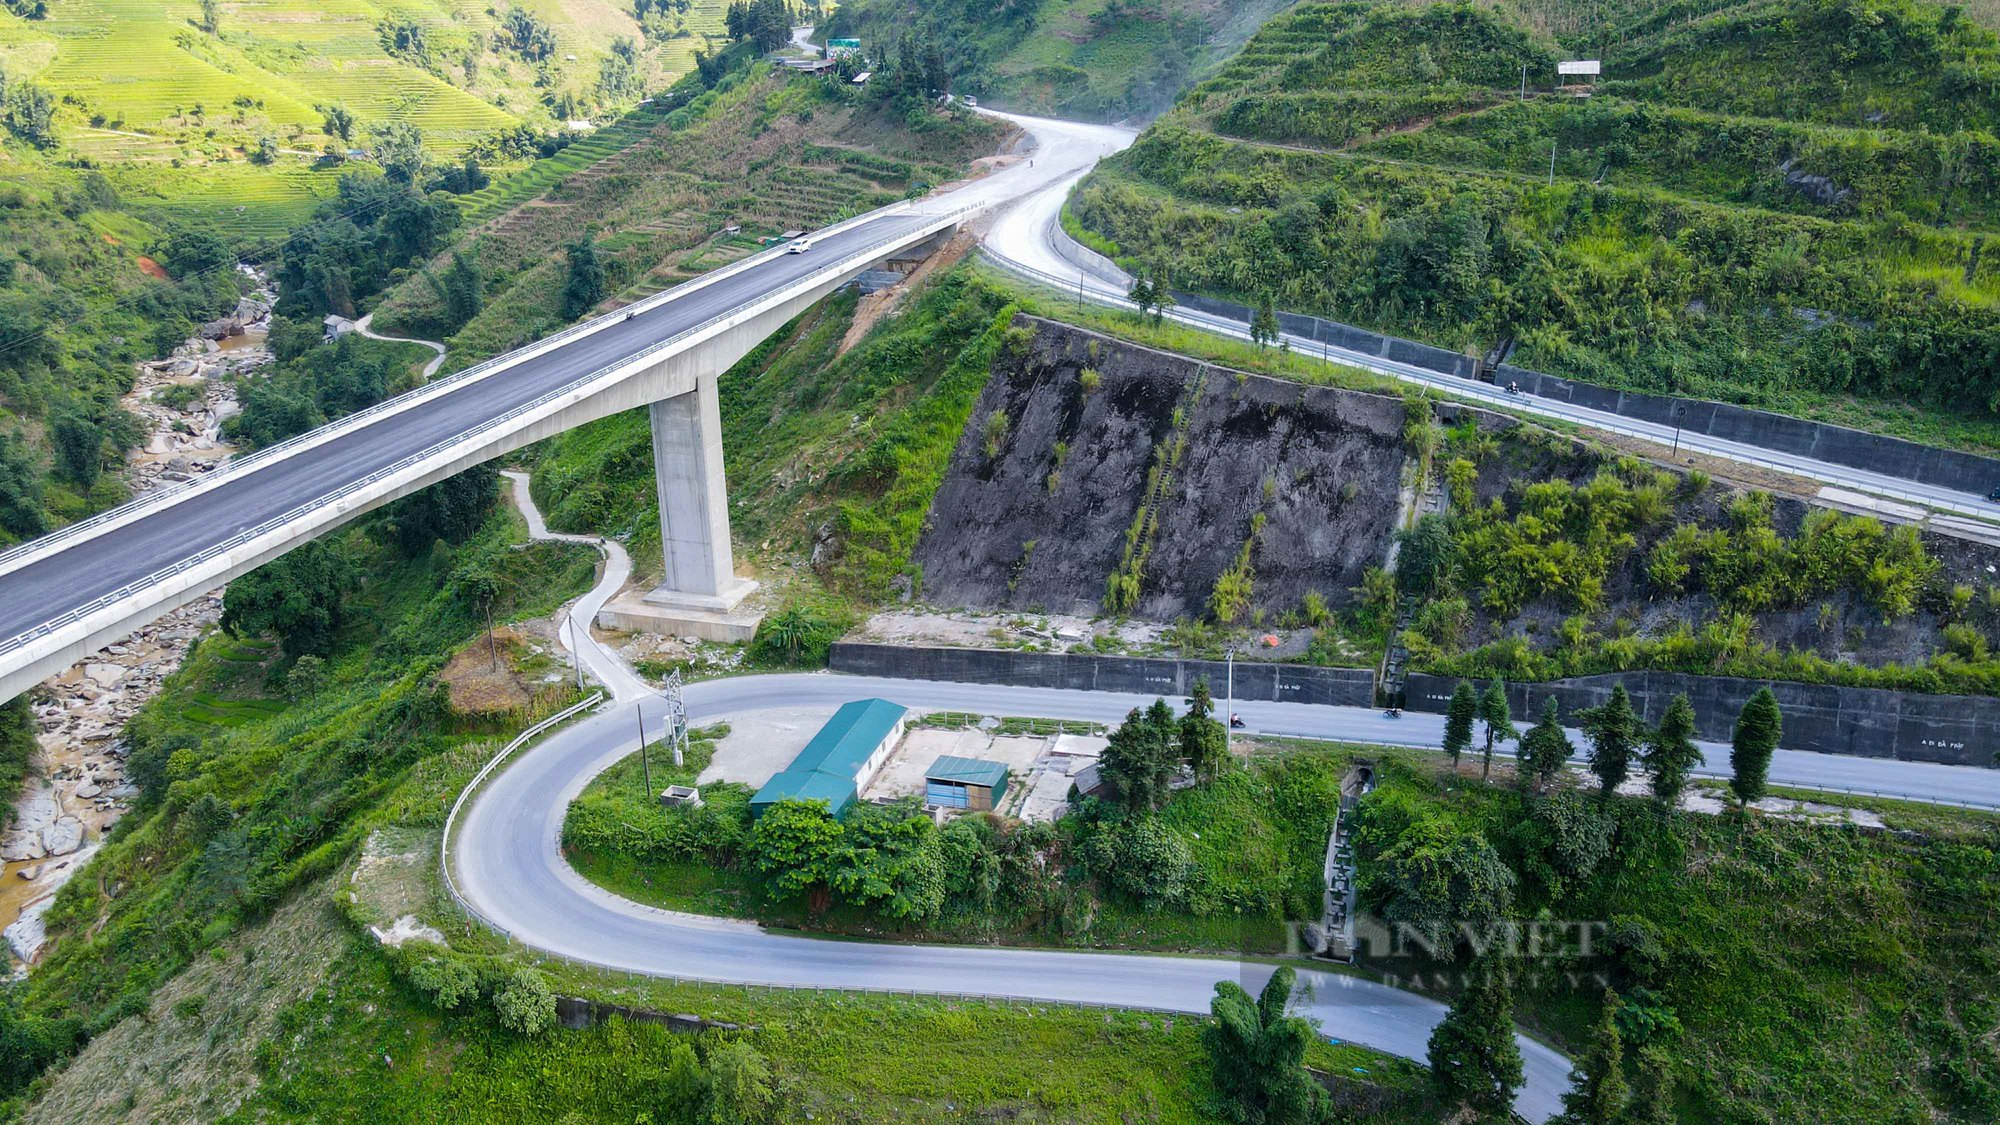 Toàn cảnh cây cầu Móng Sến hơn 450 tỷ có trụ cầu cao nhất Việt Nam